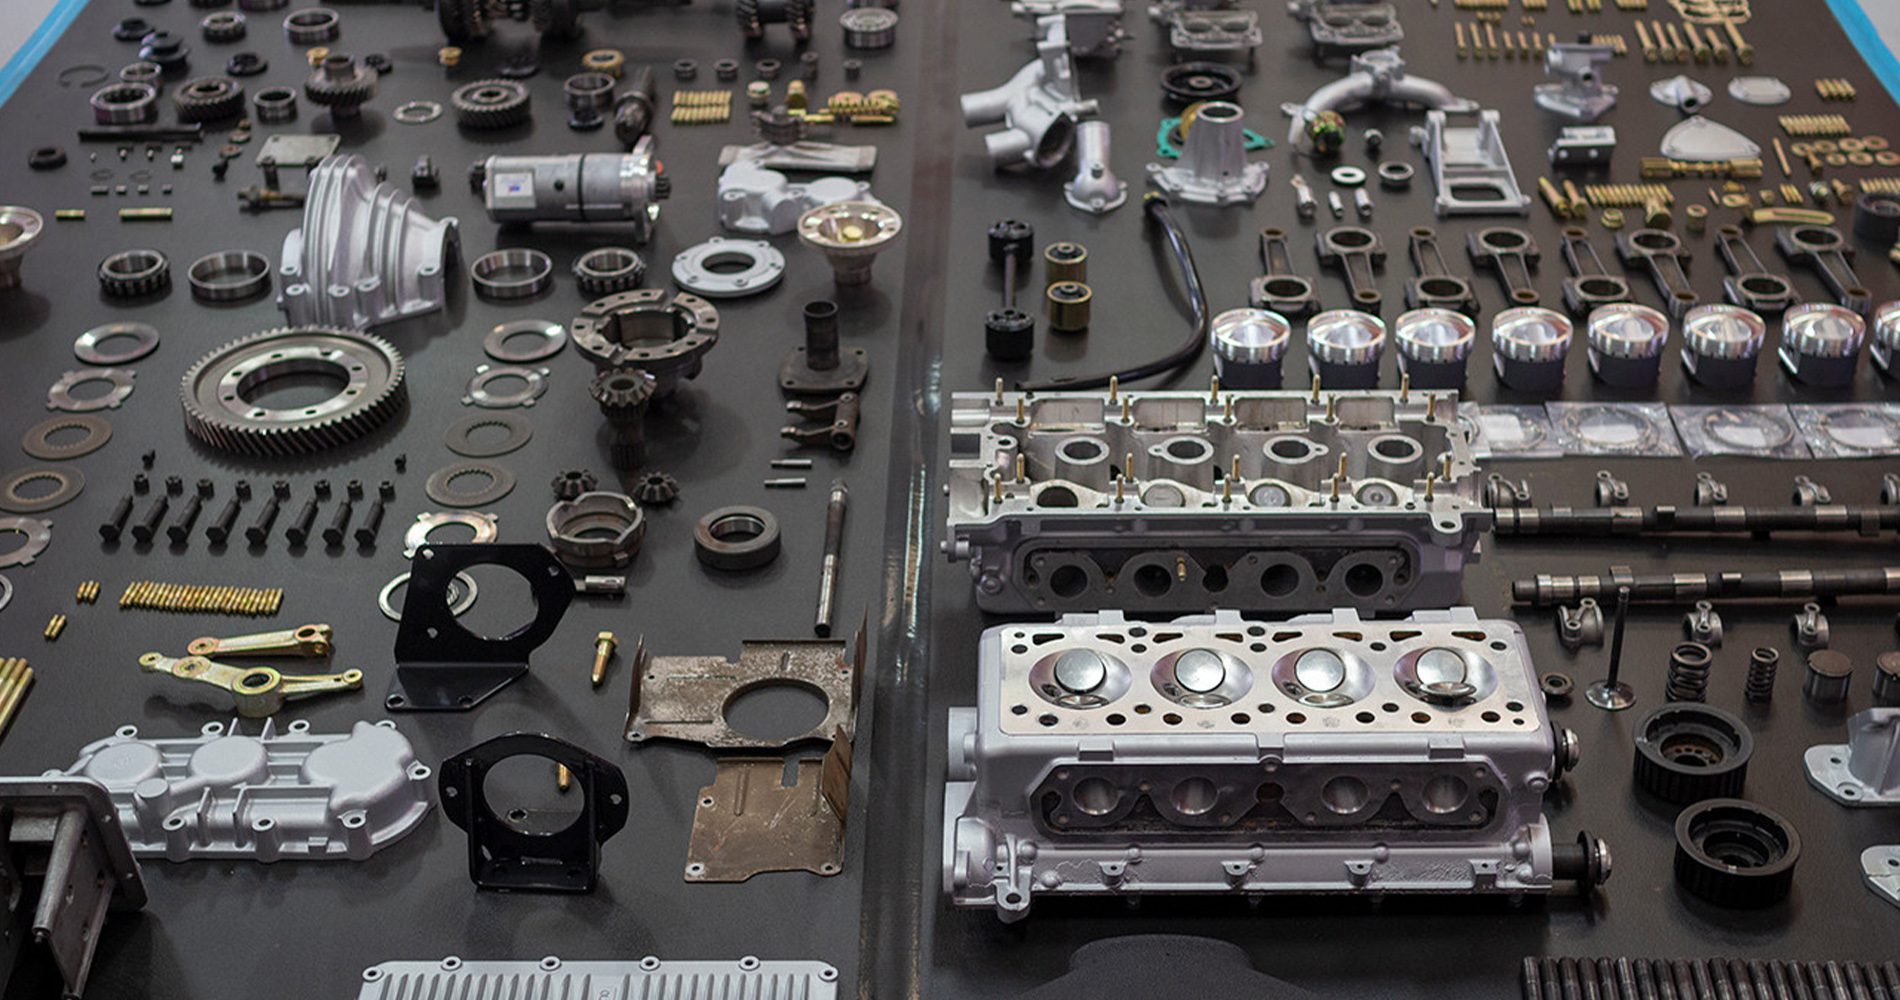 Ferrari engine rebuild parts